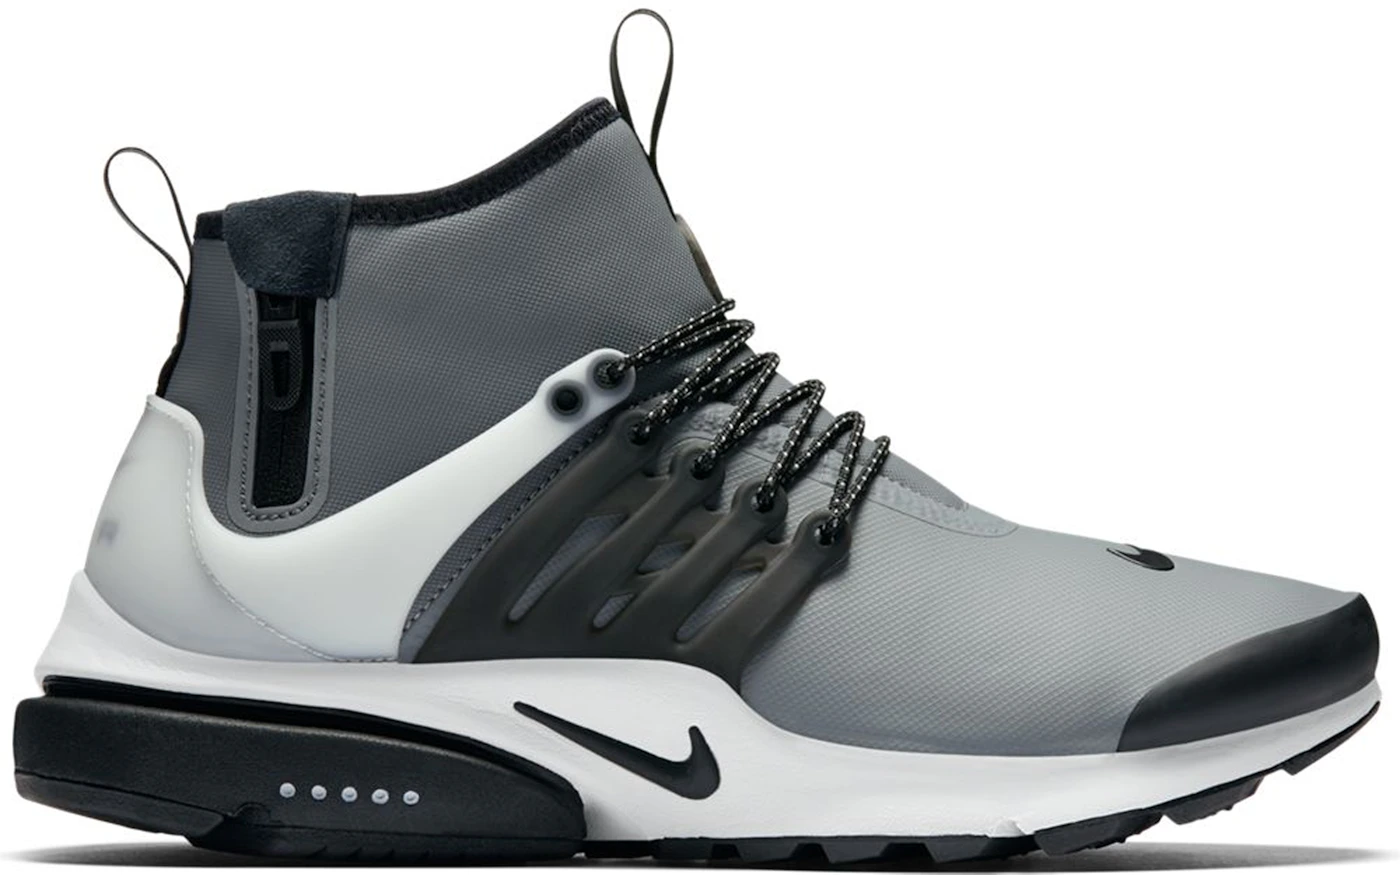 favorito Muy enojado Preconcepción Nike Air Presto Mid Utility Cool Grey Men's - 859524-001 - US